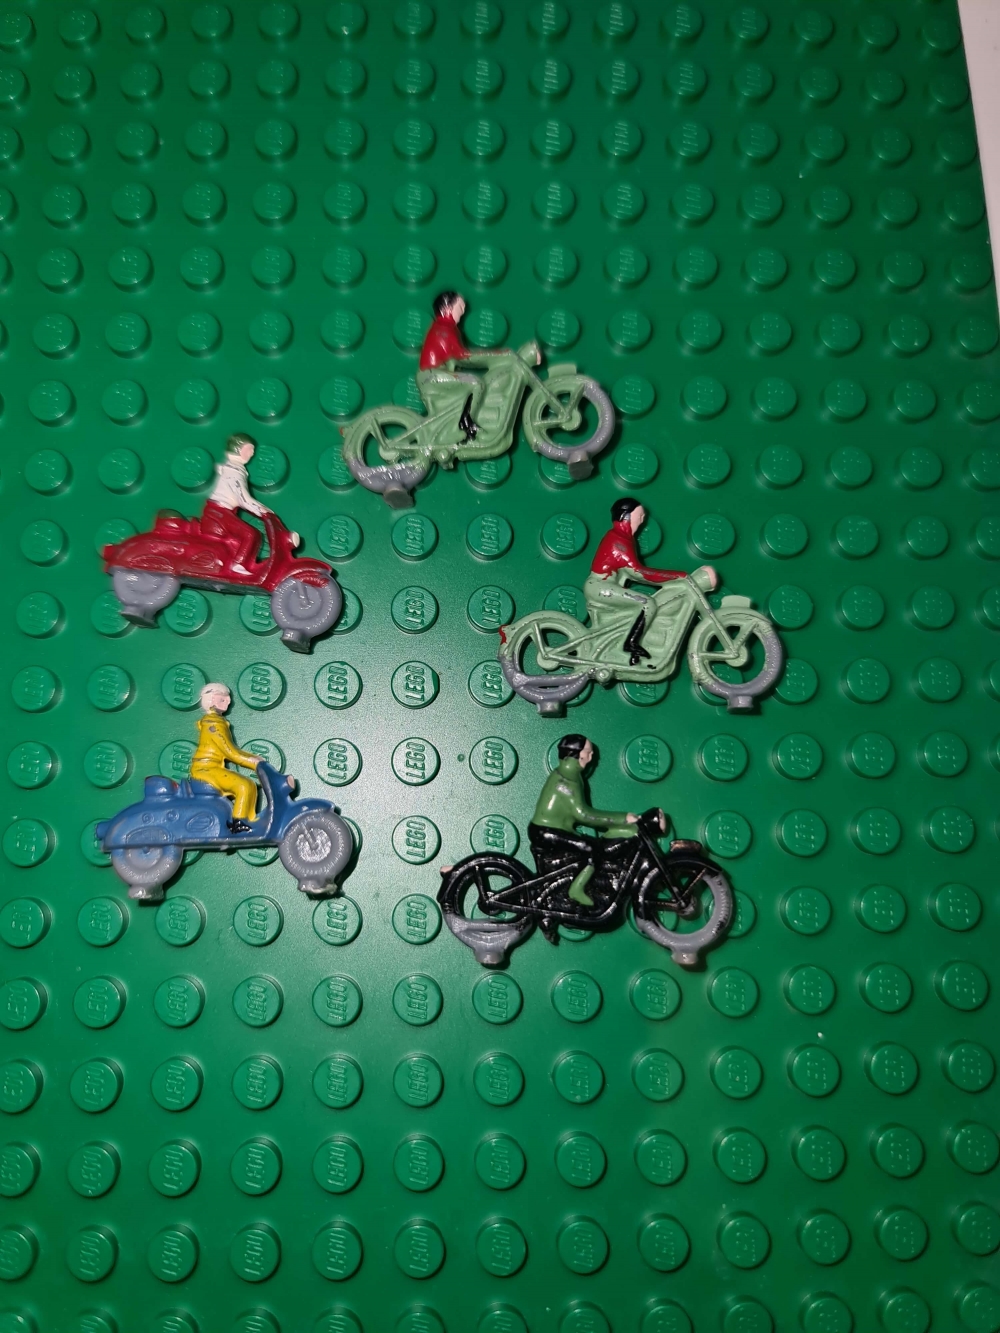 Sett 270/1270 fra Lego Legoland/Classic serien.
5 stk motorsykler. Håndmalte.
Veldig god stand.